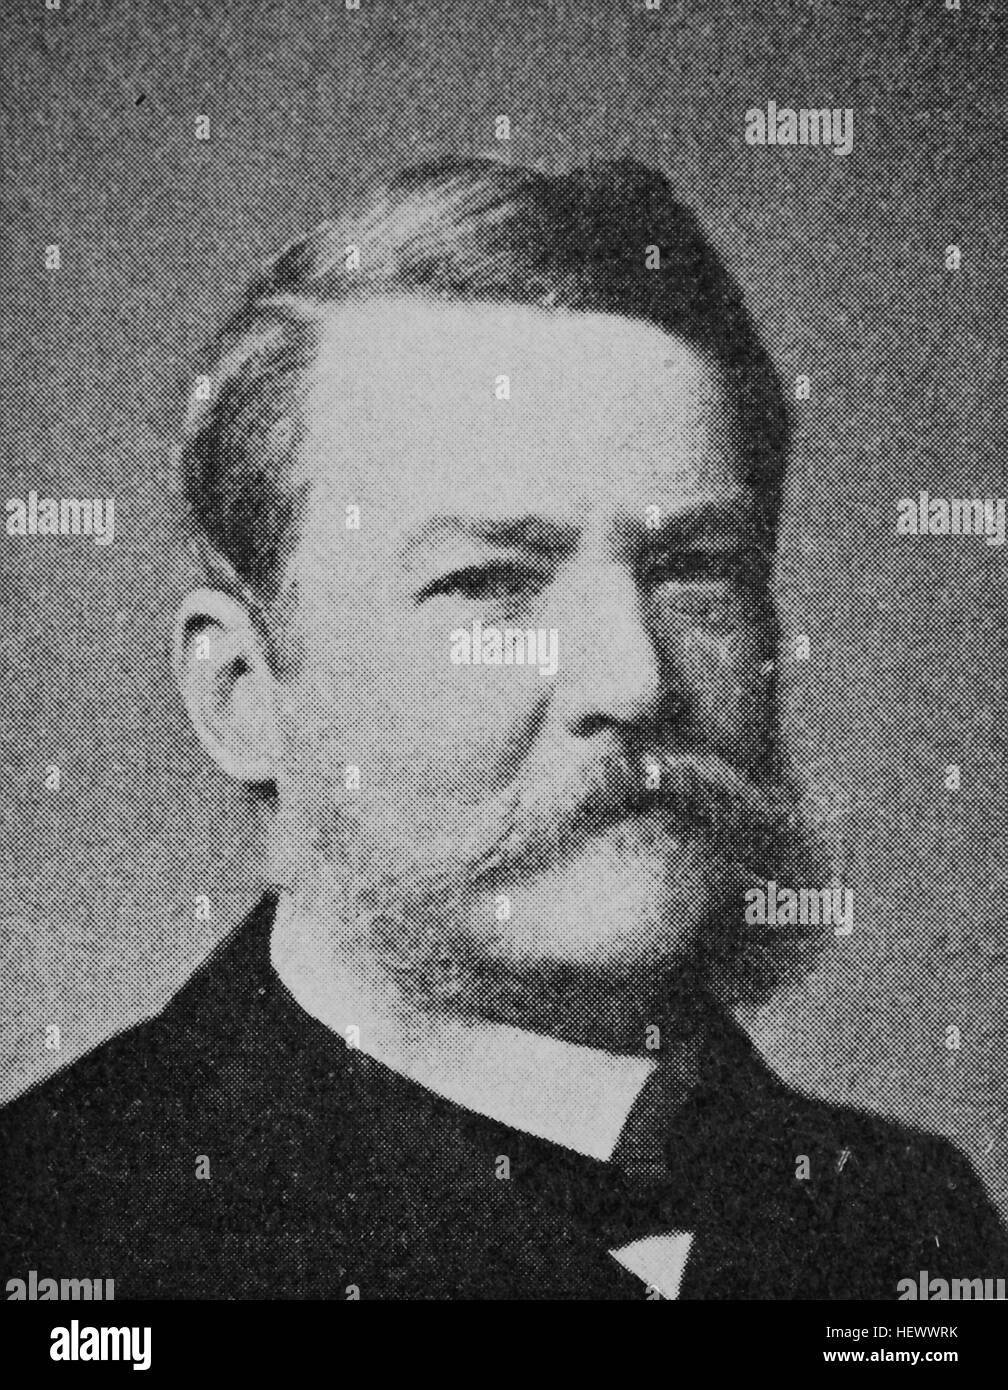 Adolf Heinrich Wilhelm Scholz, Adolf Heinrich Wilhelm von Scholz, 1833 - 1924, German army officer and politician, picture from 1895, digital improved Stock Photo